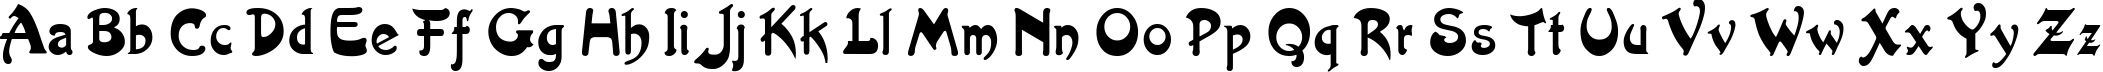 Пример написания английского алфавита шрифтом Artist-Nouveau